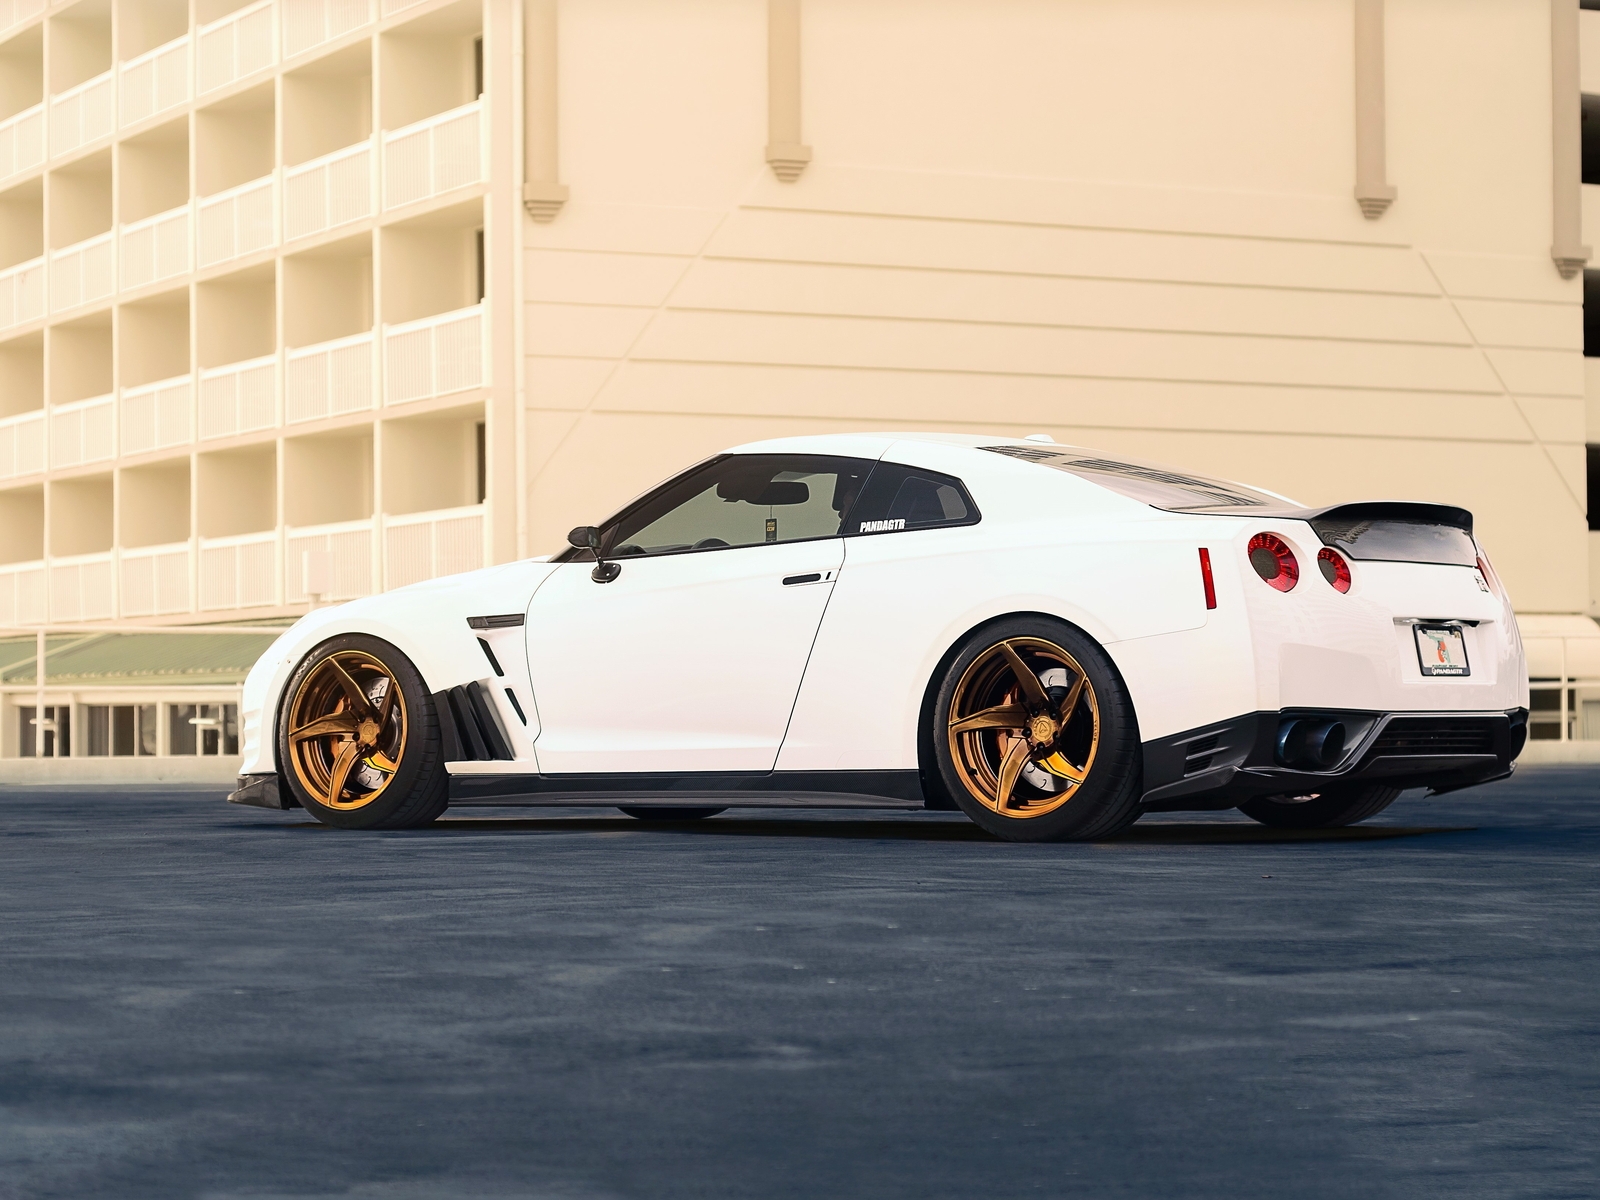 Картинка: Nissan, белый, GT-R, здание, асфальт, литьё, суперкар